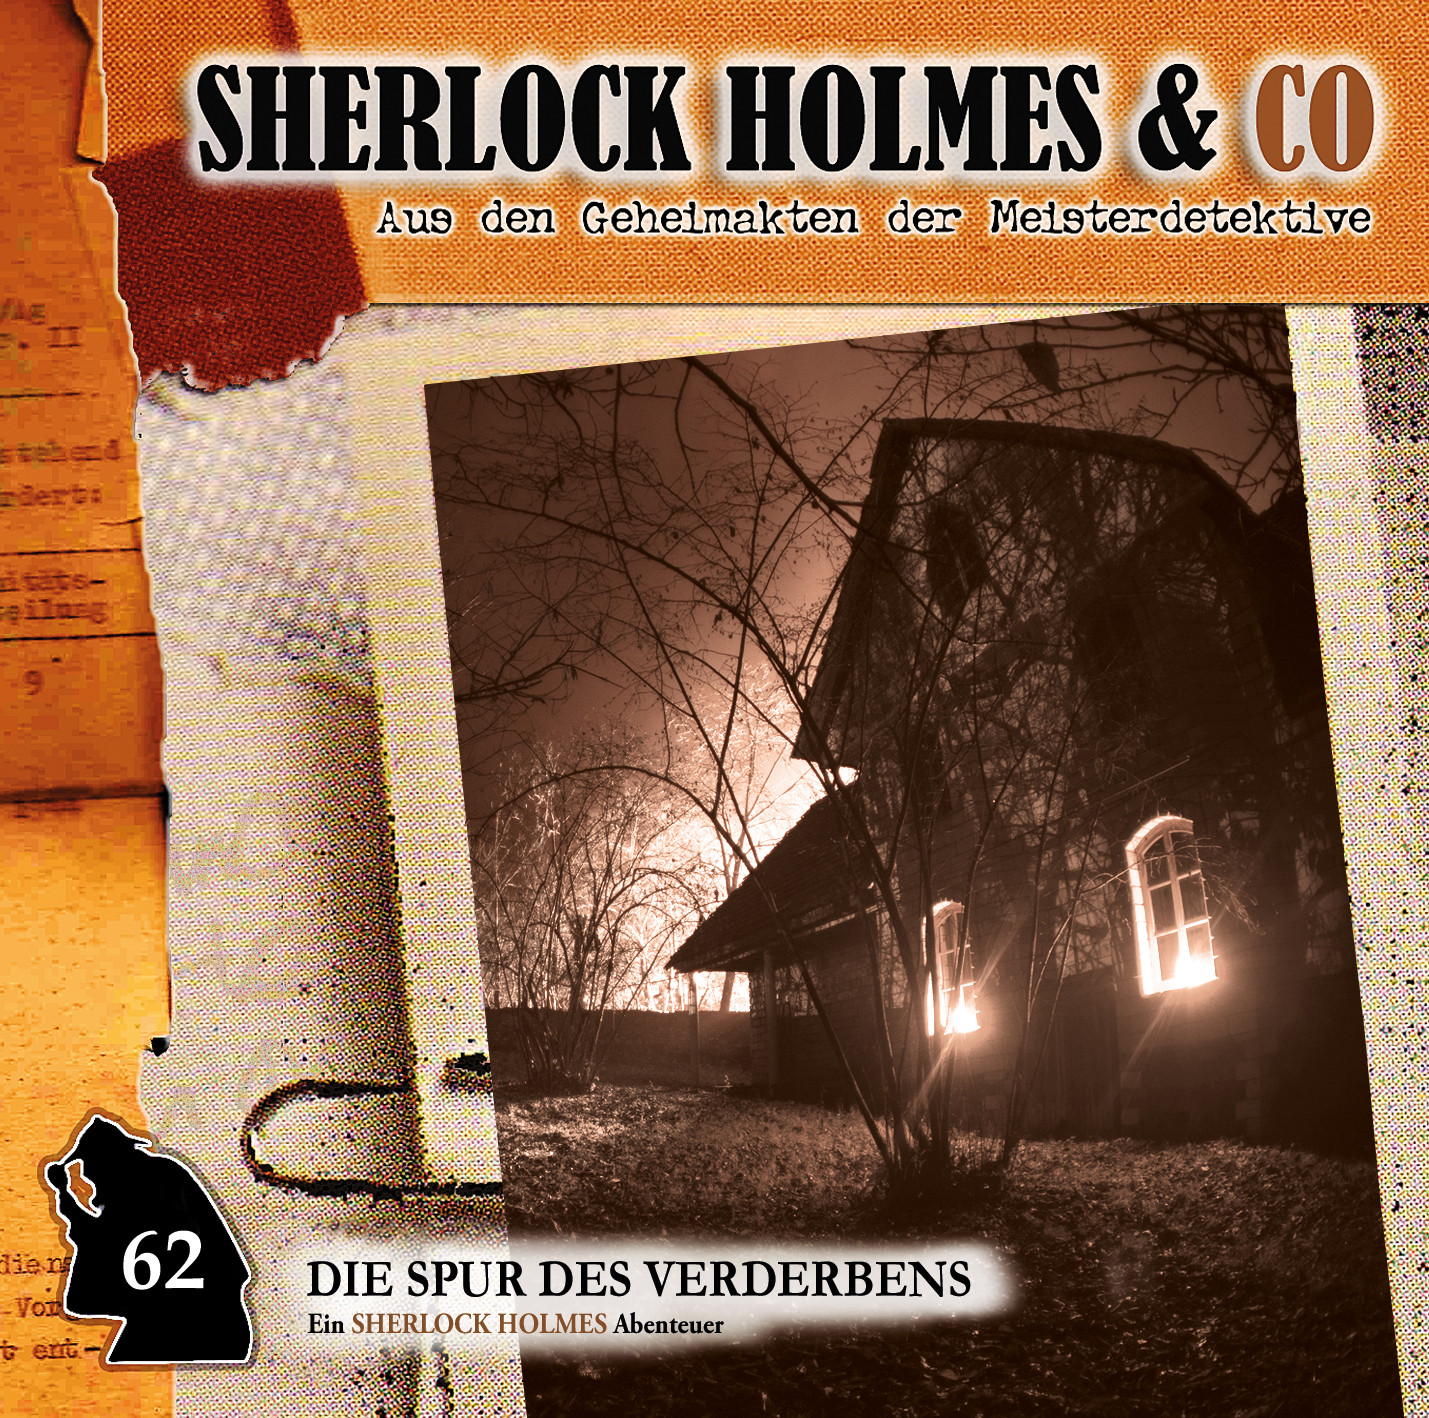 Sherlock Holmes und co. 62 Die Spur des Verderbens (Teil 2)